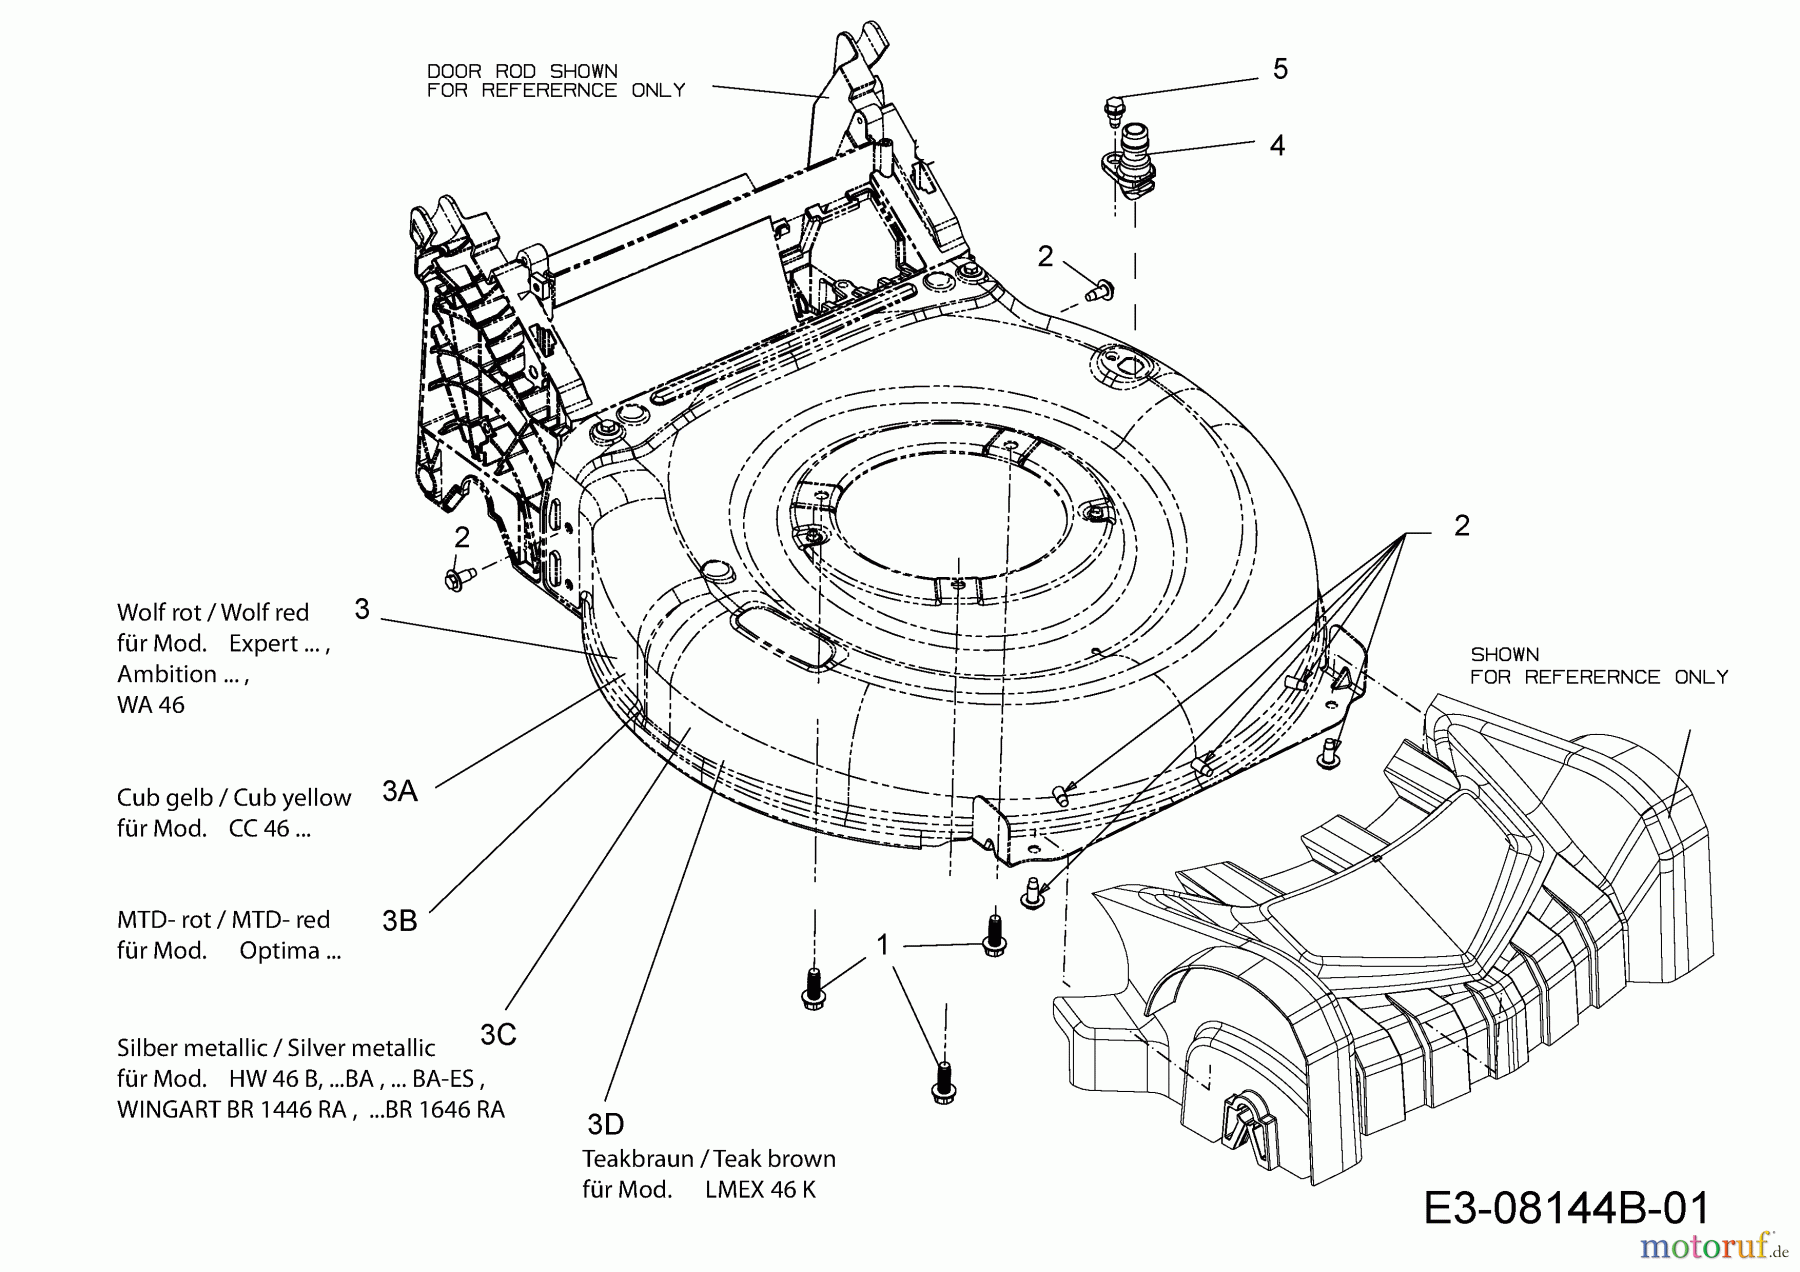  MTD Motormäher mit Antrieb Optima 46 SPB 12A-TG5C600  (2014) Mähwerksgehäuse